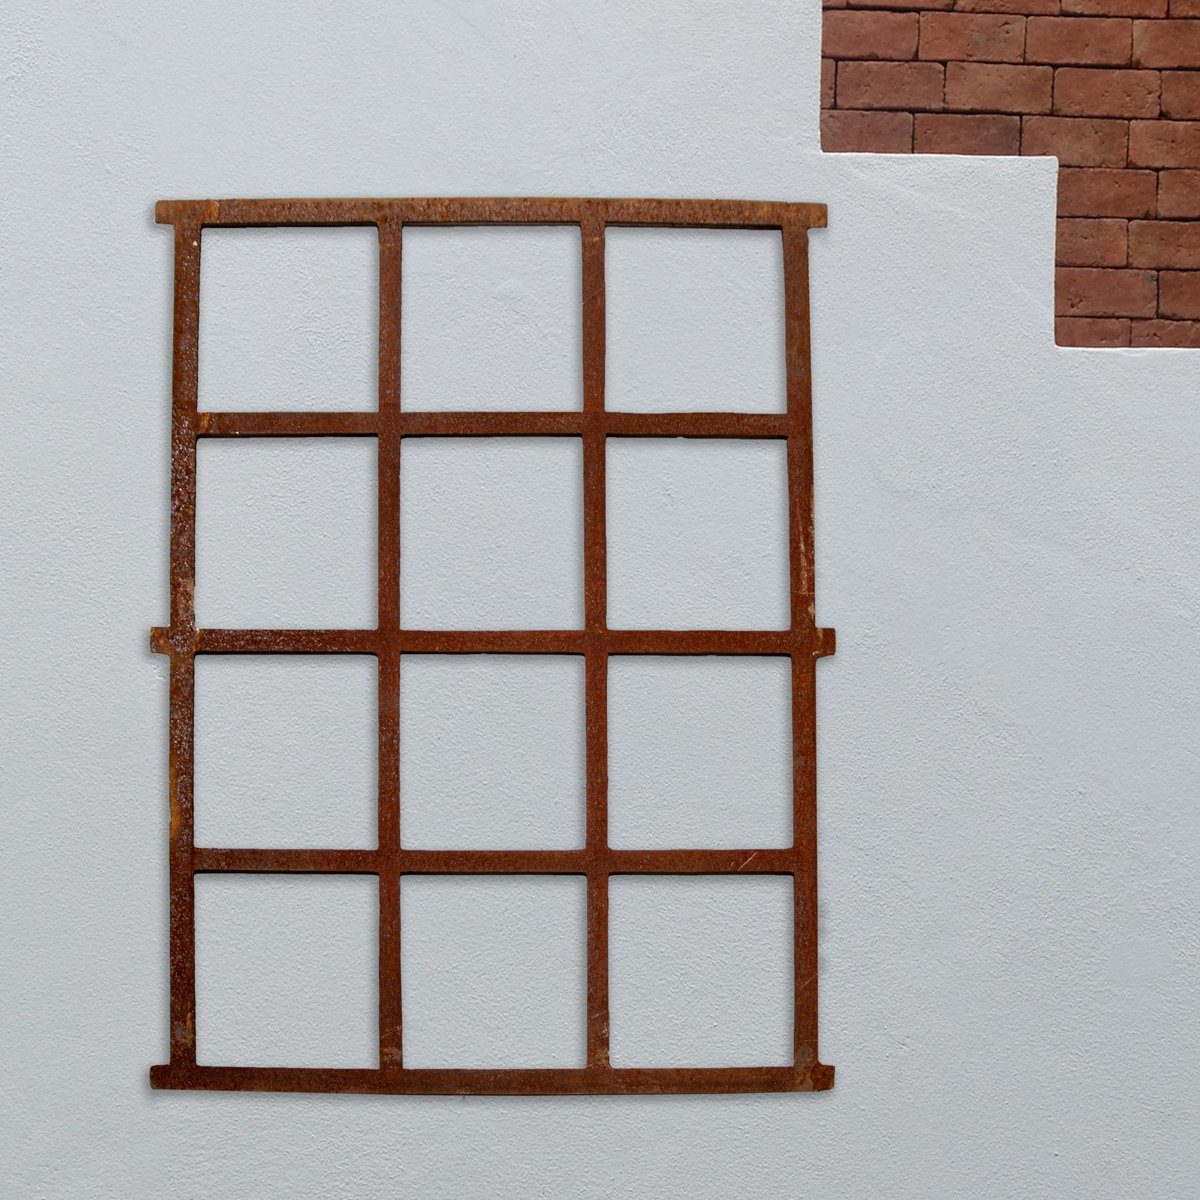 Antikas Fenster Stallfenster, Rostig, Bauernfenster, Eisenfenster, Gartenmauer 95 x 73